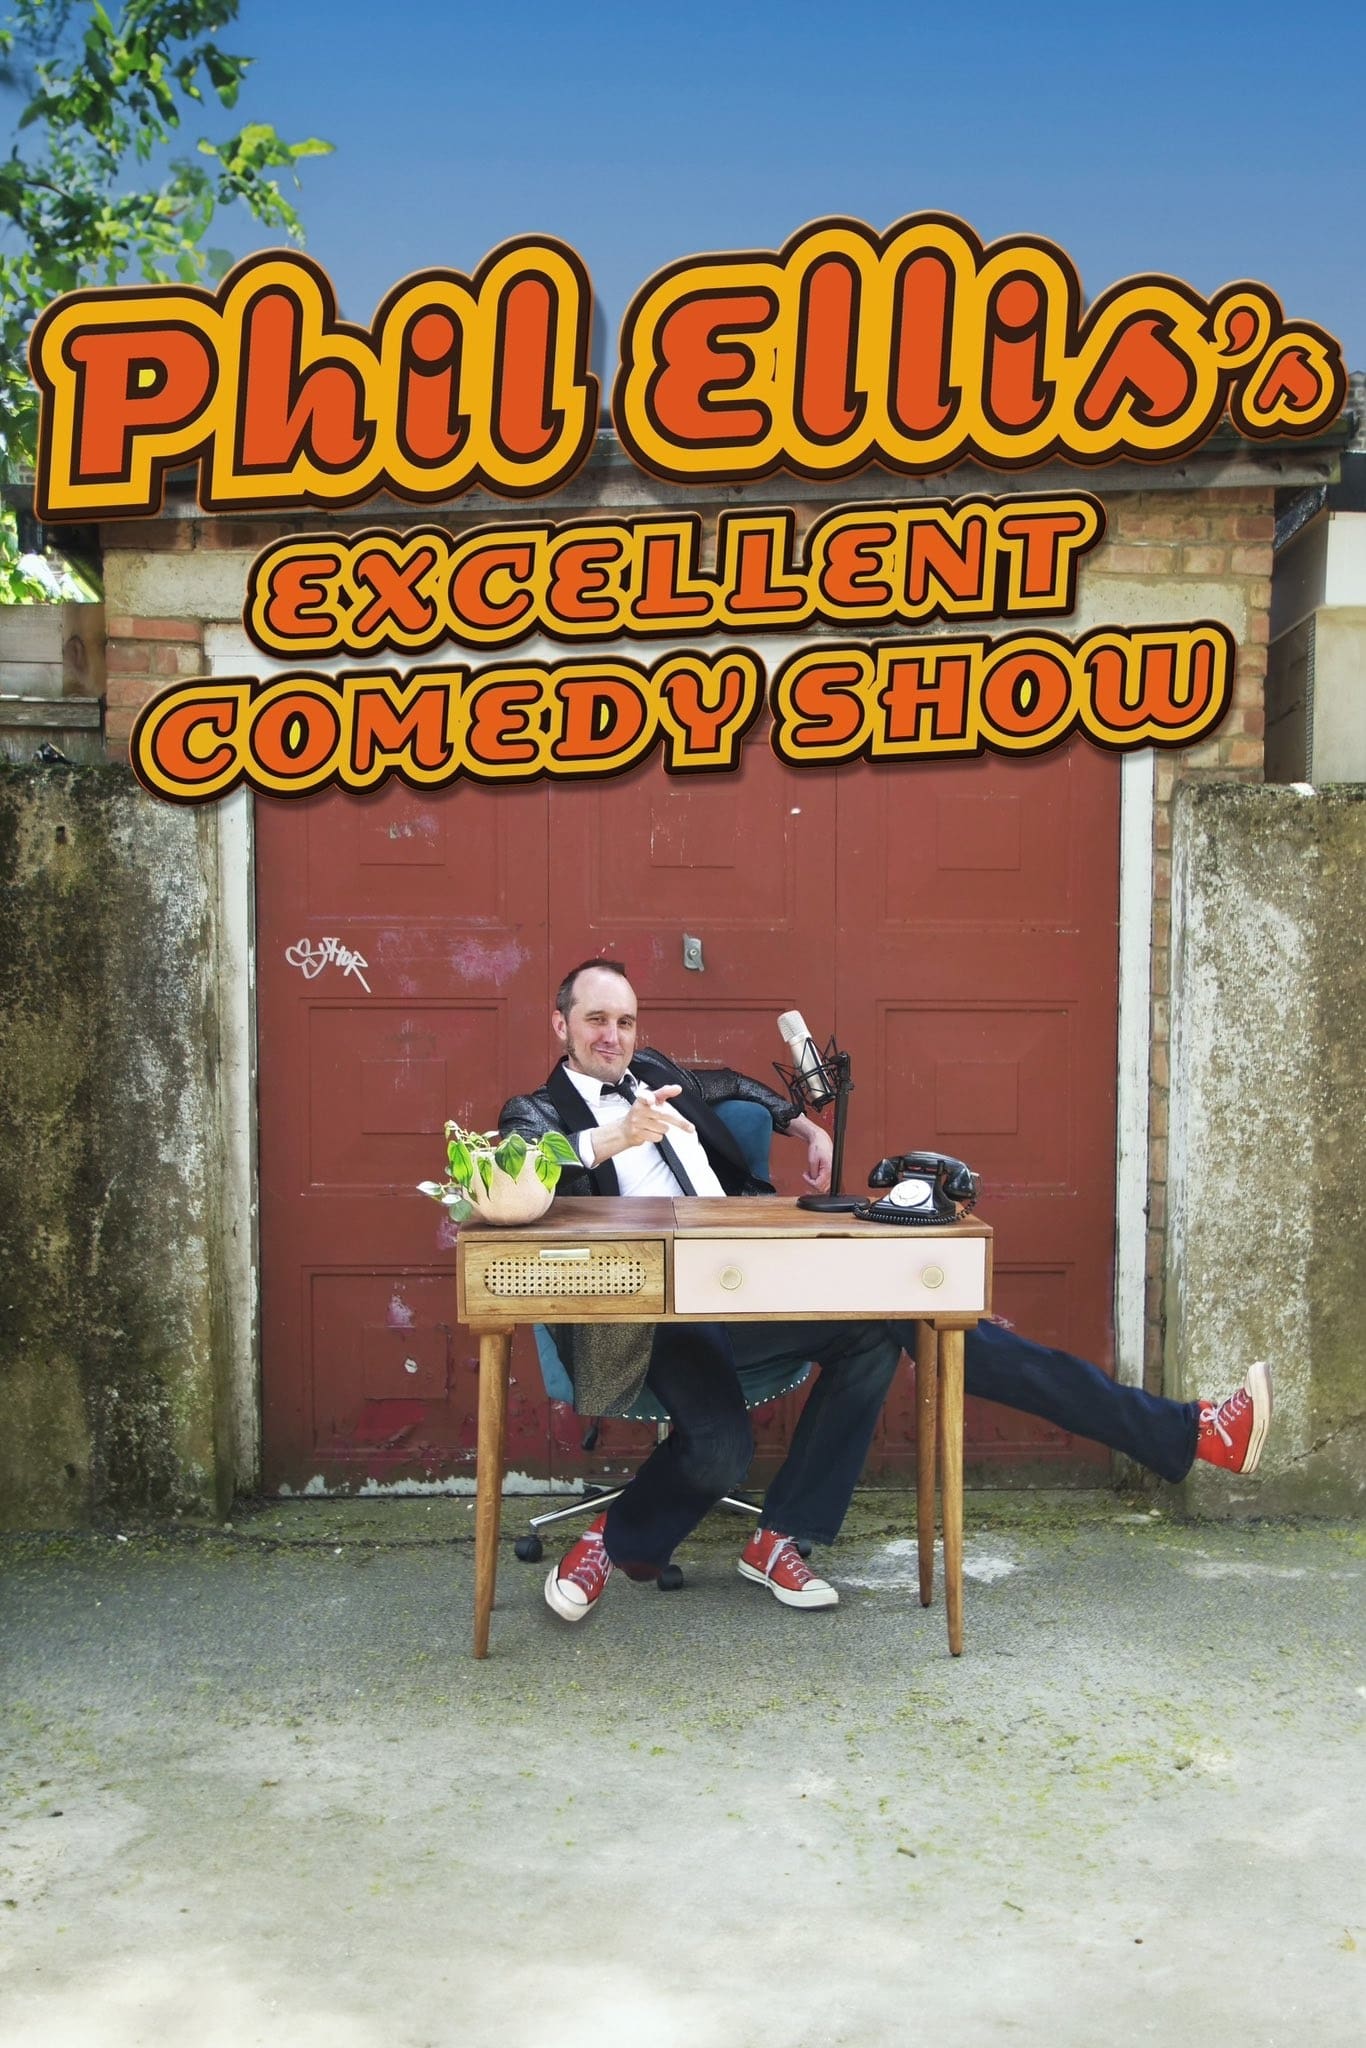 Phil Ellis's Excellent Comedy Show